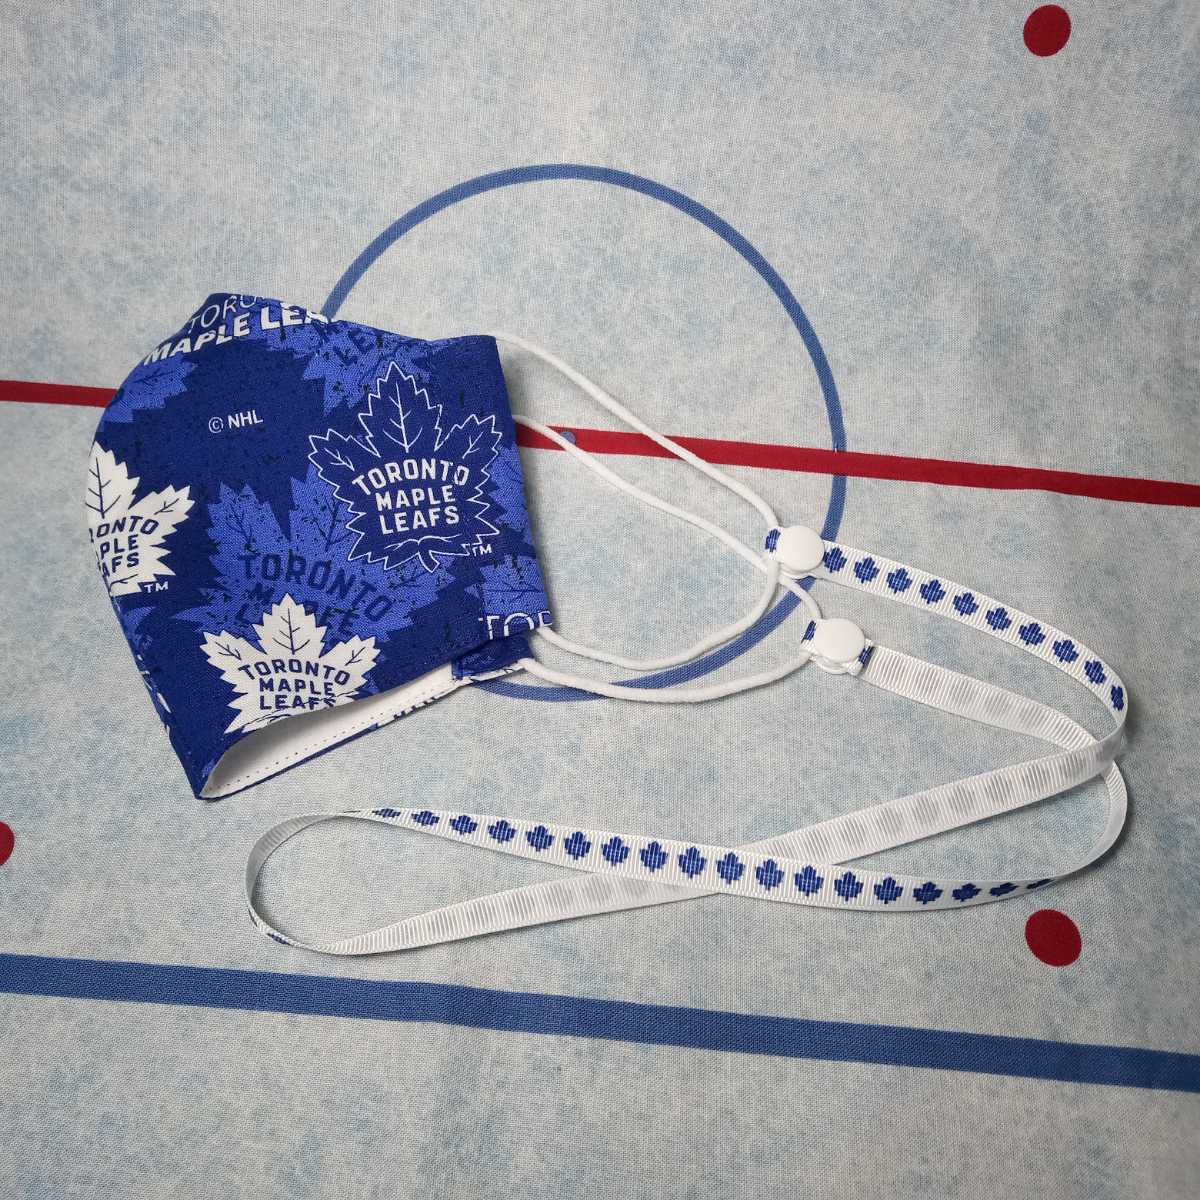 日本国内から発送★NHL Toronto Maple Leafs トロントメープルリーフス ロゴ柄 マスクカバー スッキリ型 ハンドメイド カナダ製 _ストラップは付きません